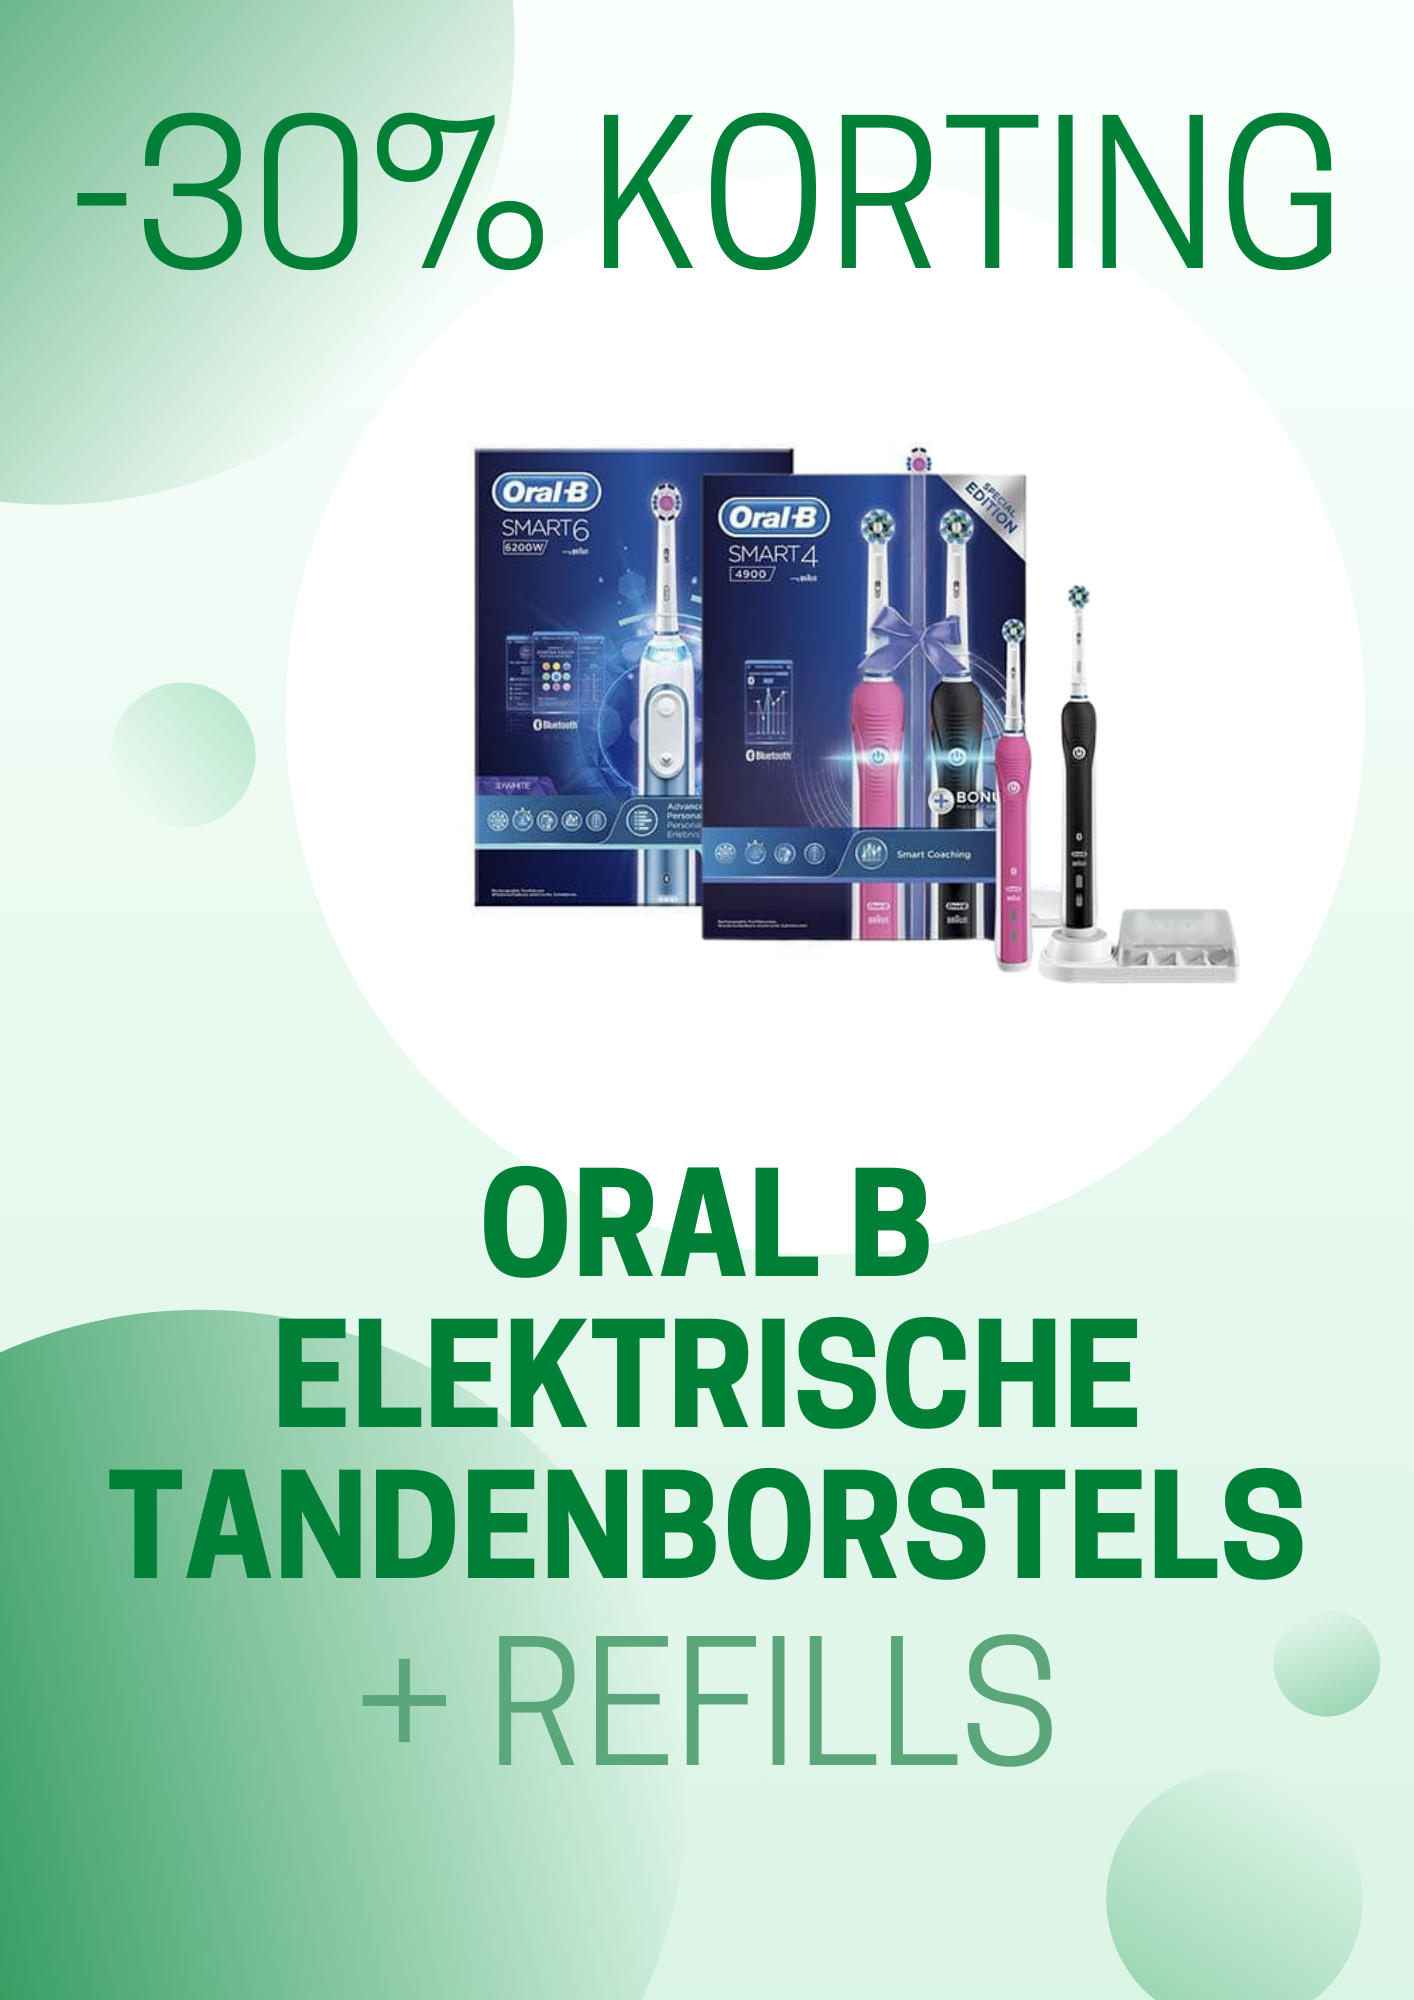 Promotie Oral B Elektrische tandenborstels